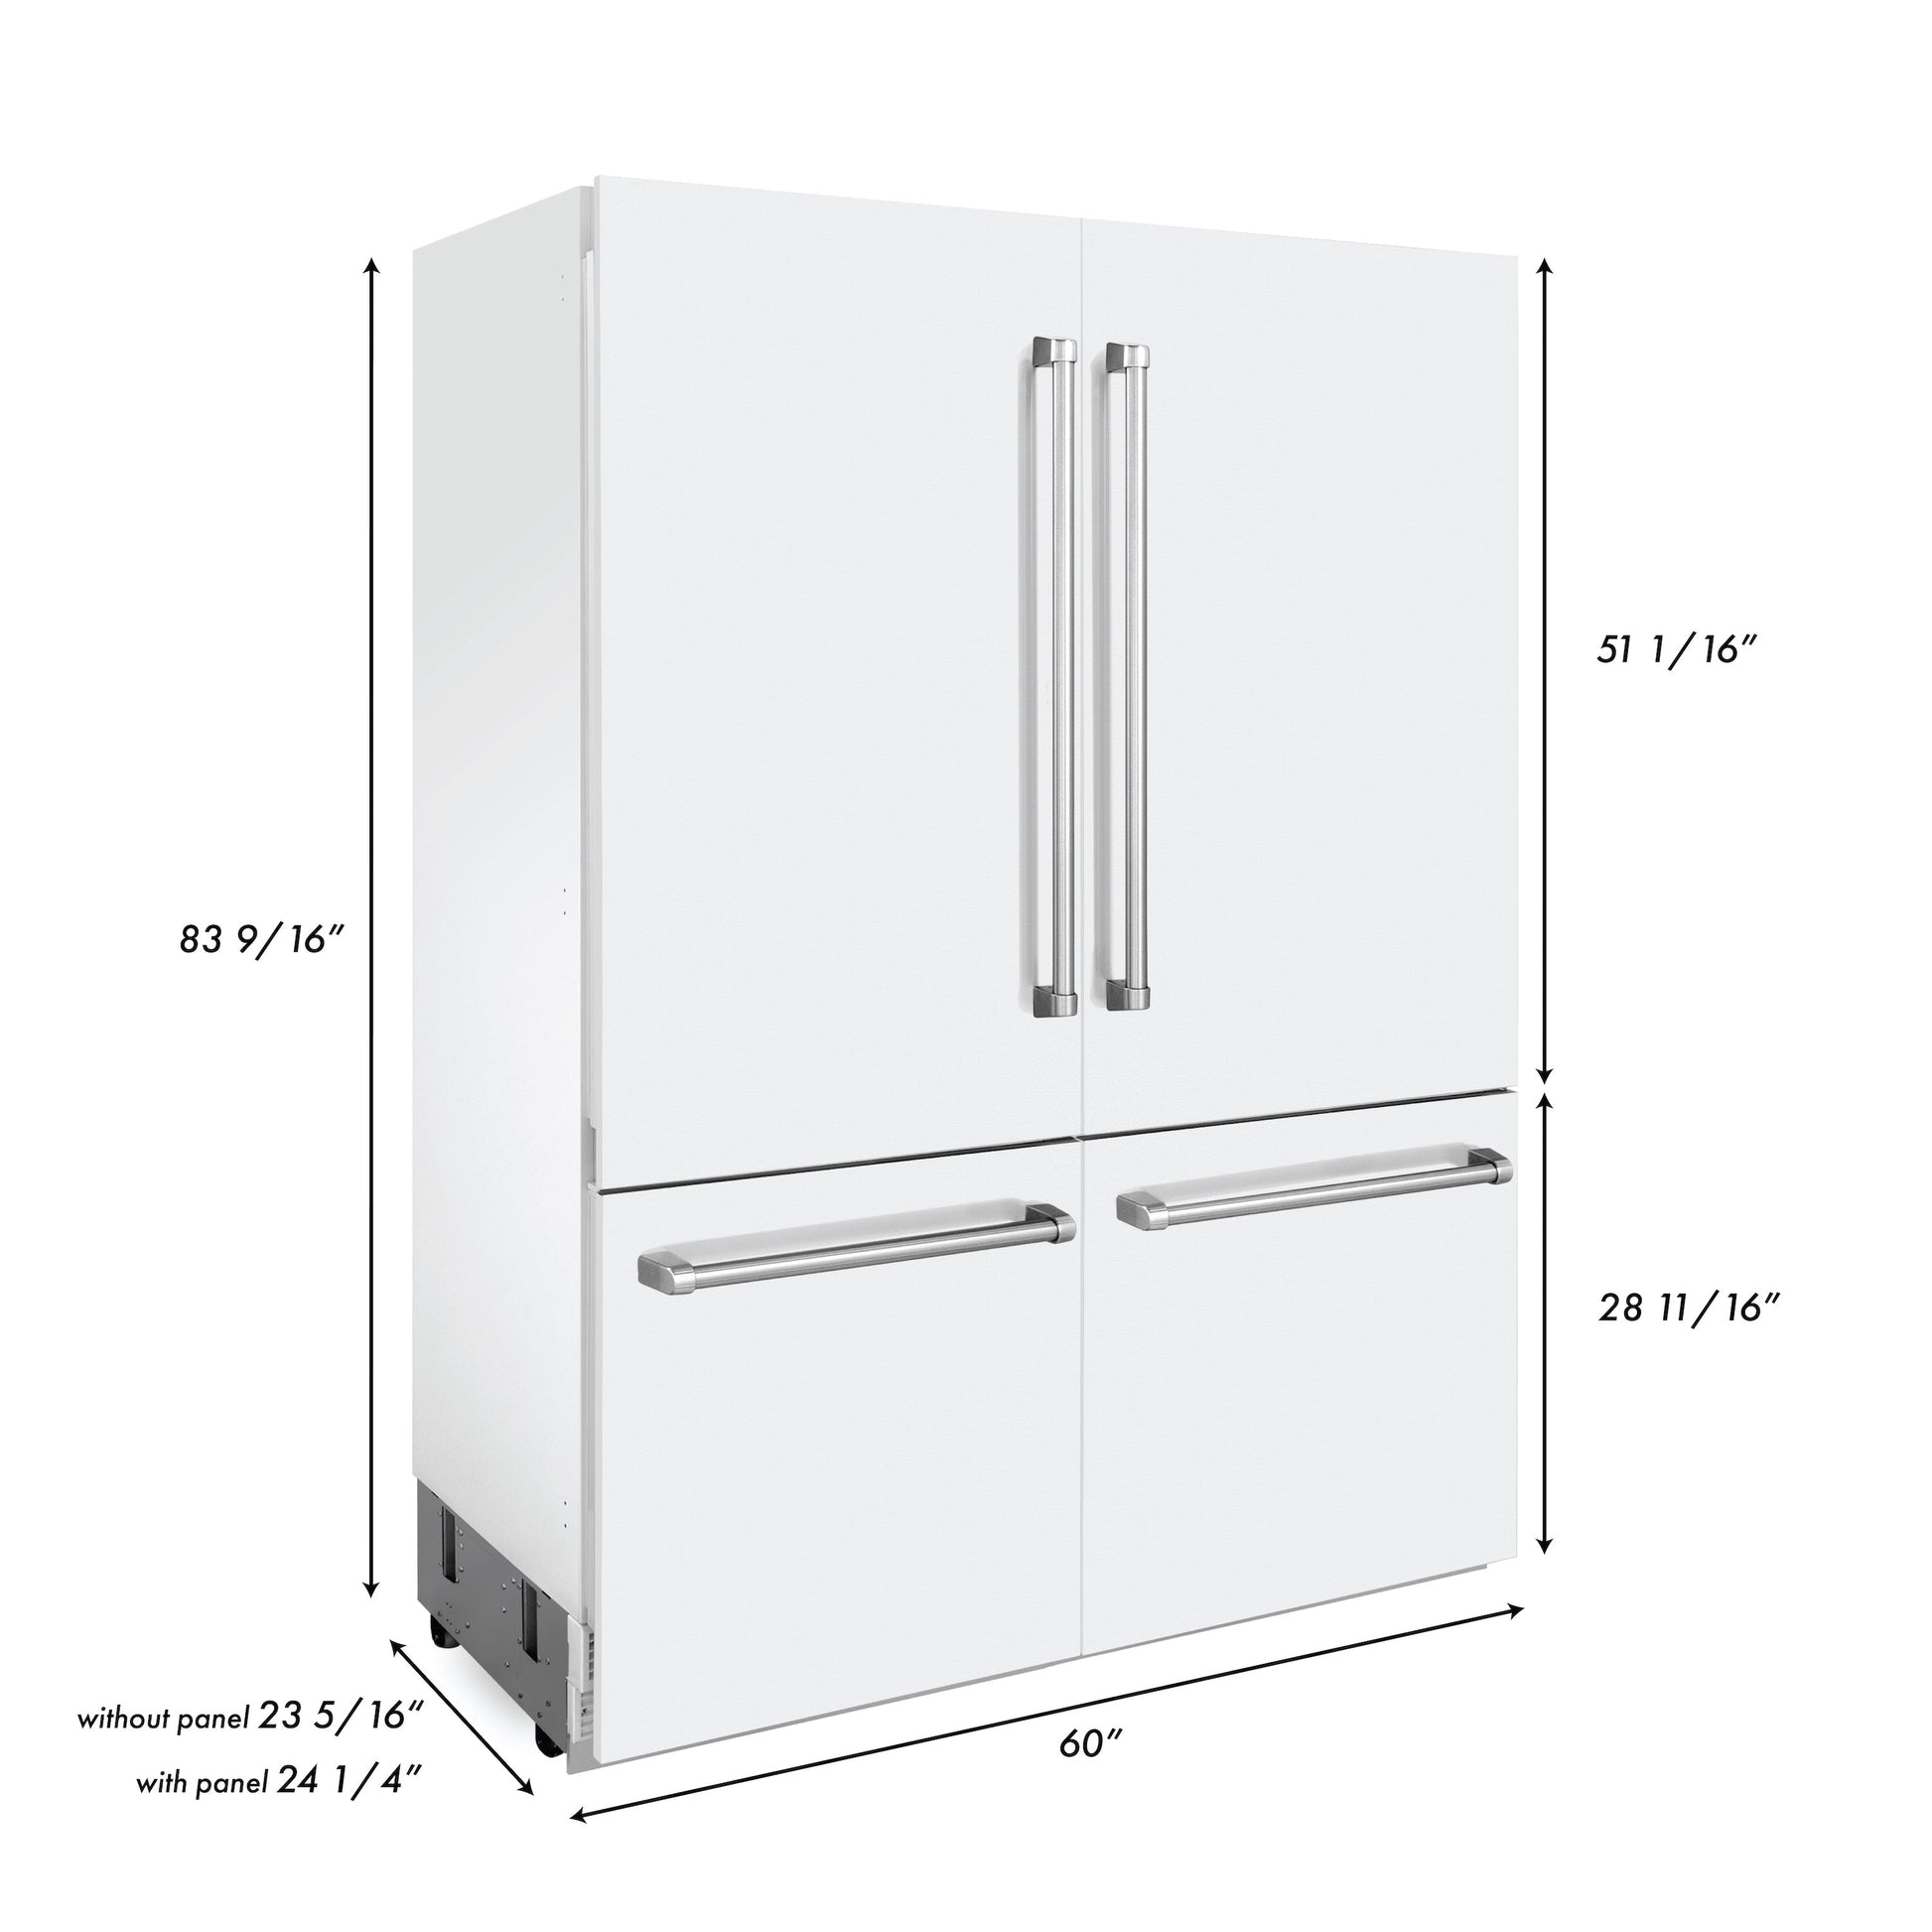 ZLINE 60" Built-In 4-Door French Door Refrigerator with Internal Water and Ice Dispenser - Matte White